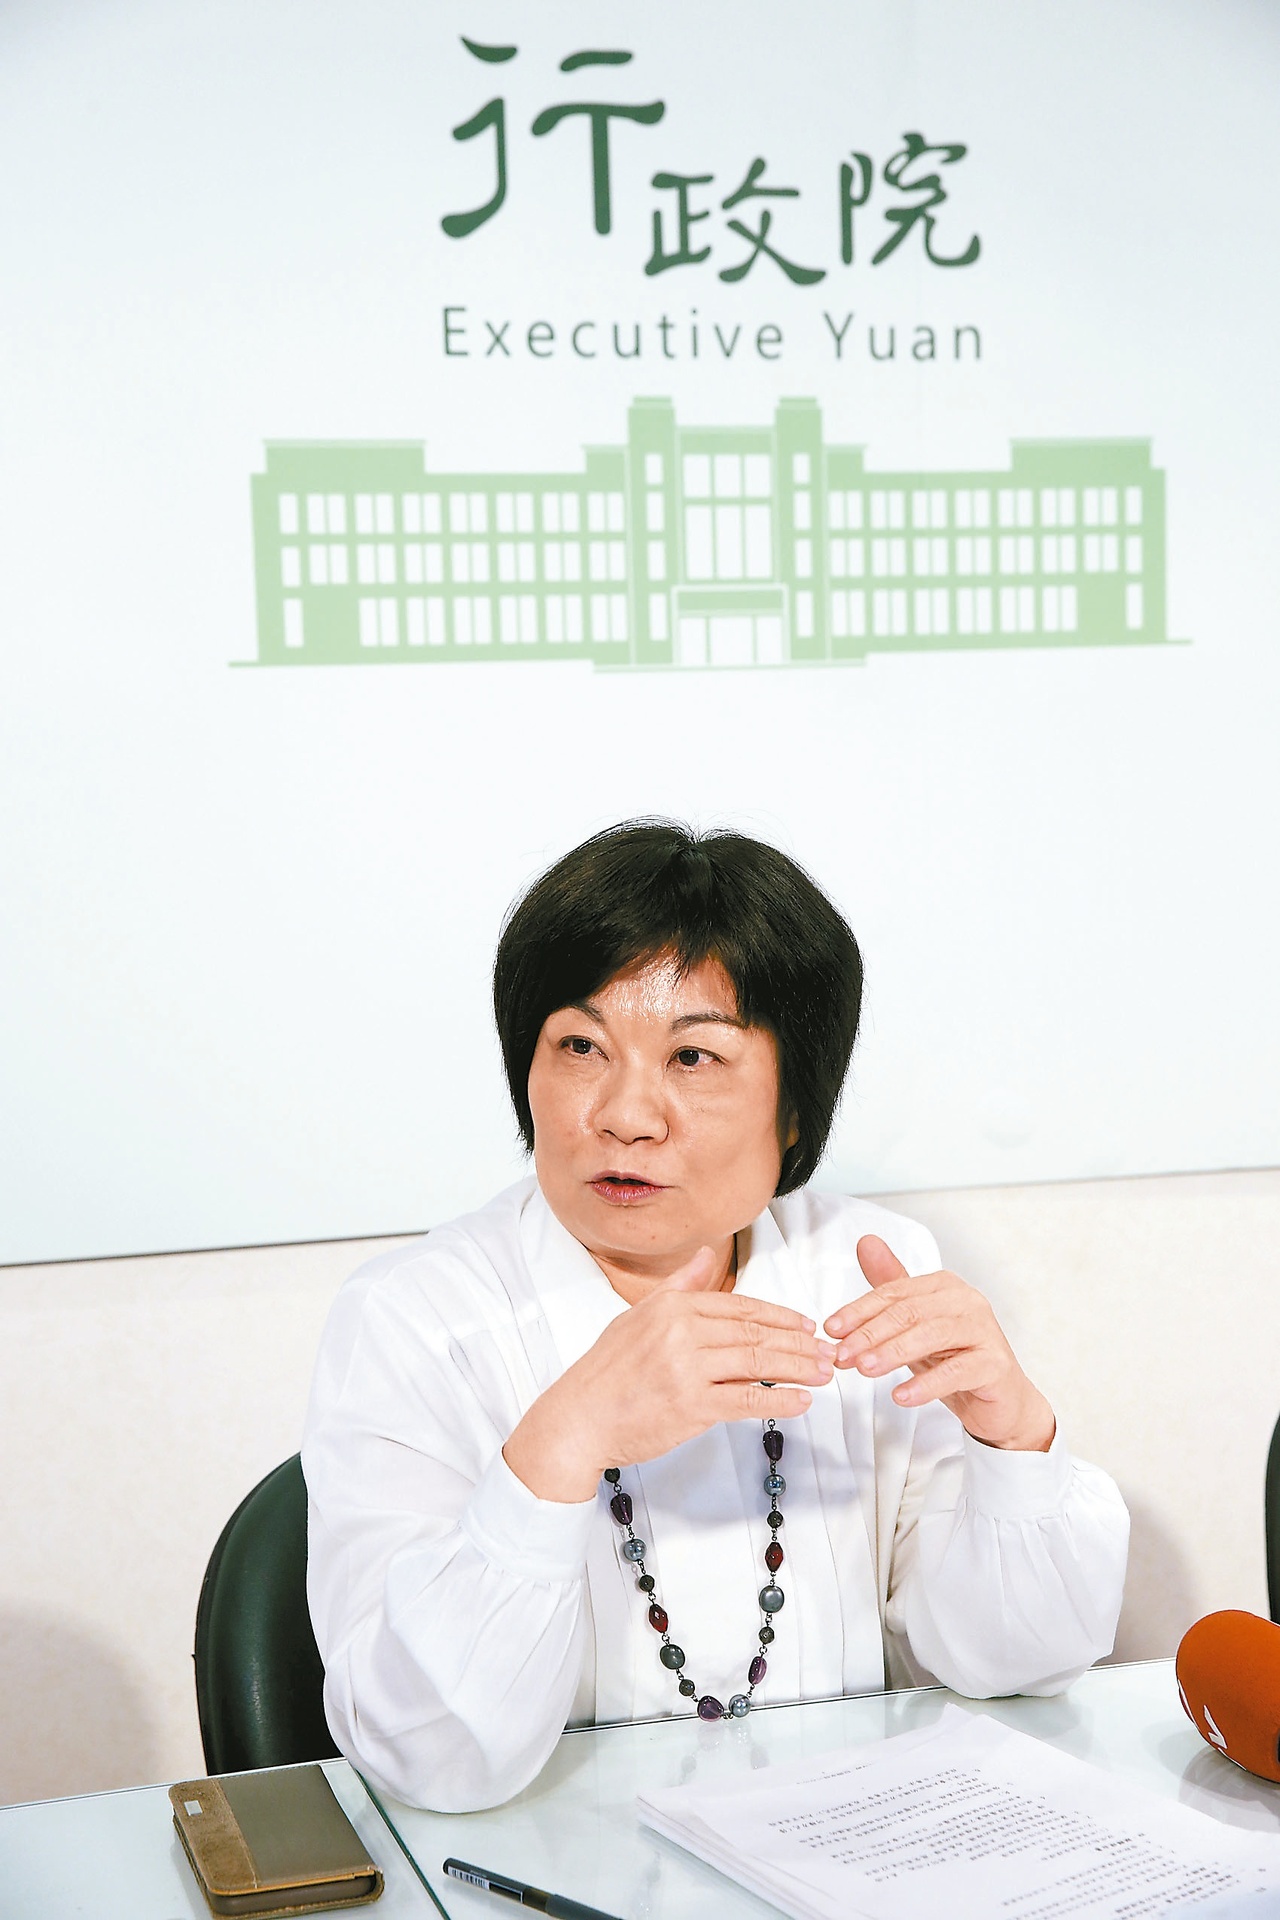 行政院秘書長陳美伶被質疑「代行」政務委員職務，引發爭議。 報系資料照